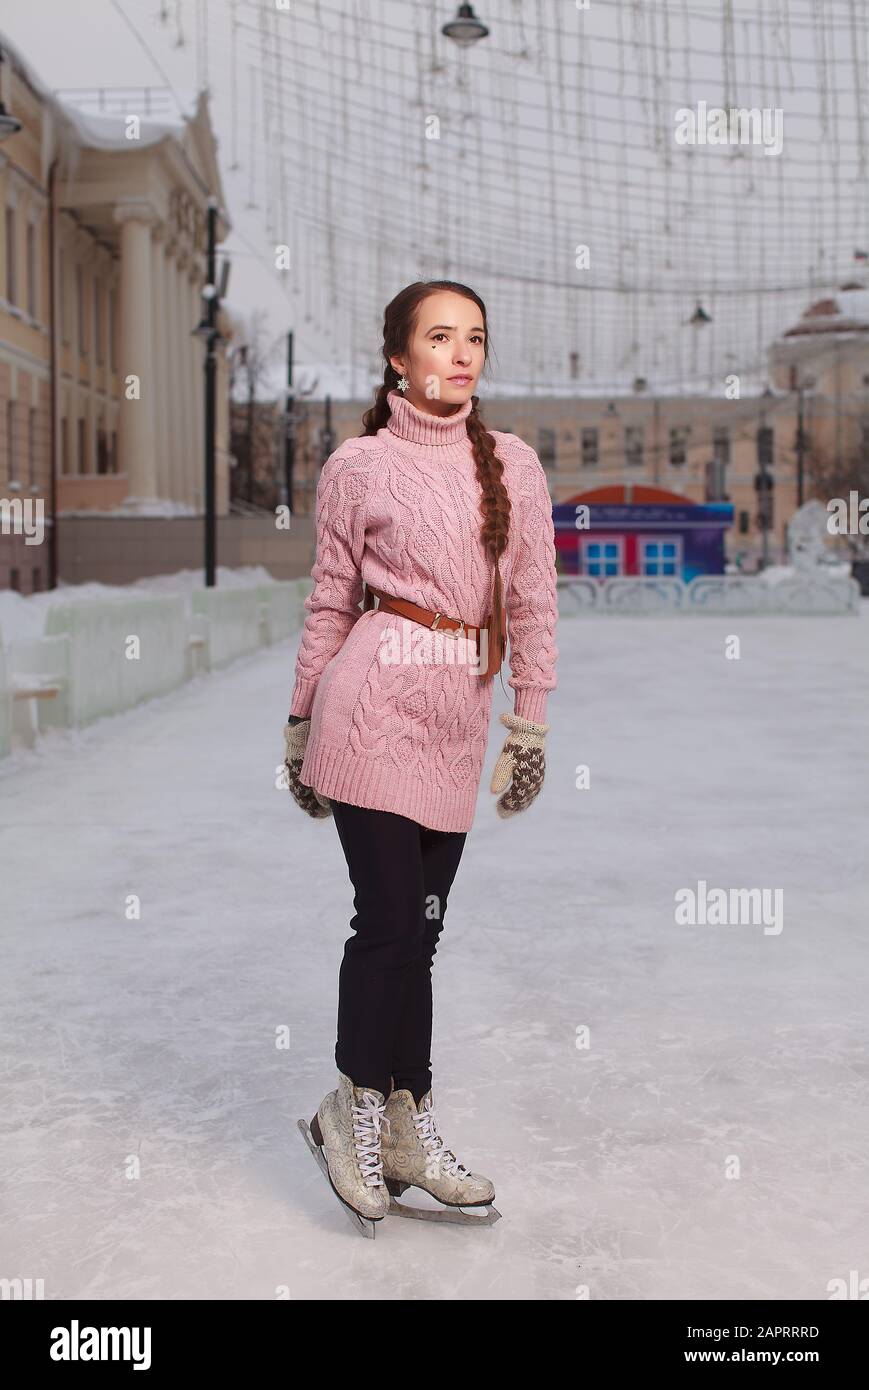 Junge hübsche Frau bekleidet rosafarbenes Sweatshirt, das in Schlittschuhbahnen, Eisbahn im Freien, auf Eis steht Stockfoto